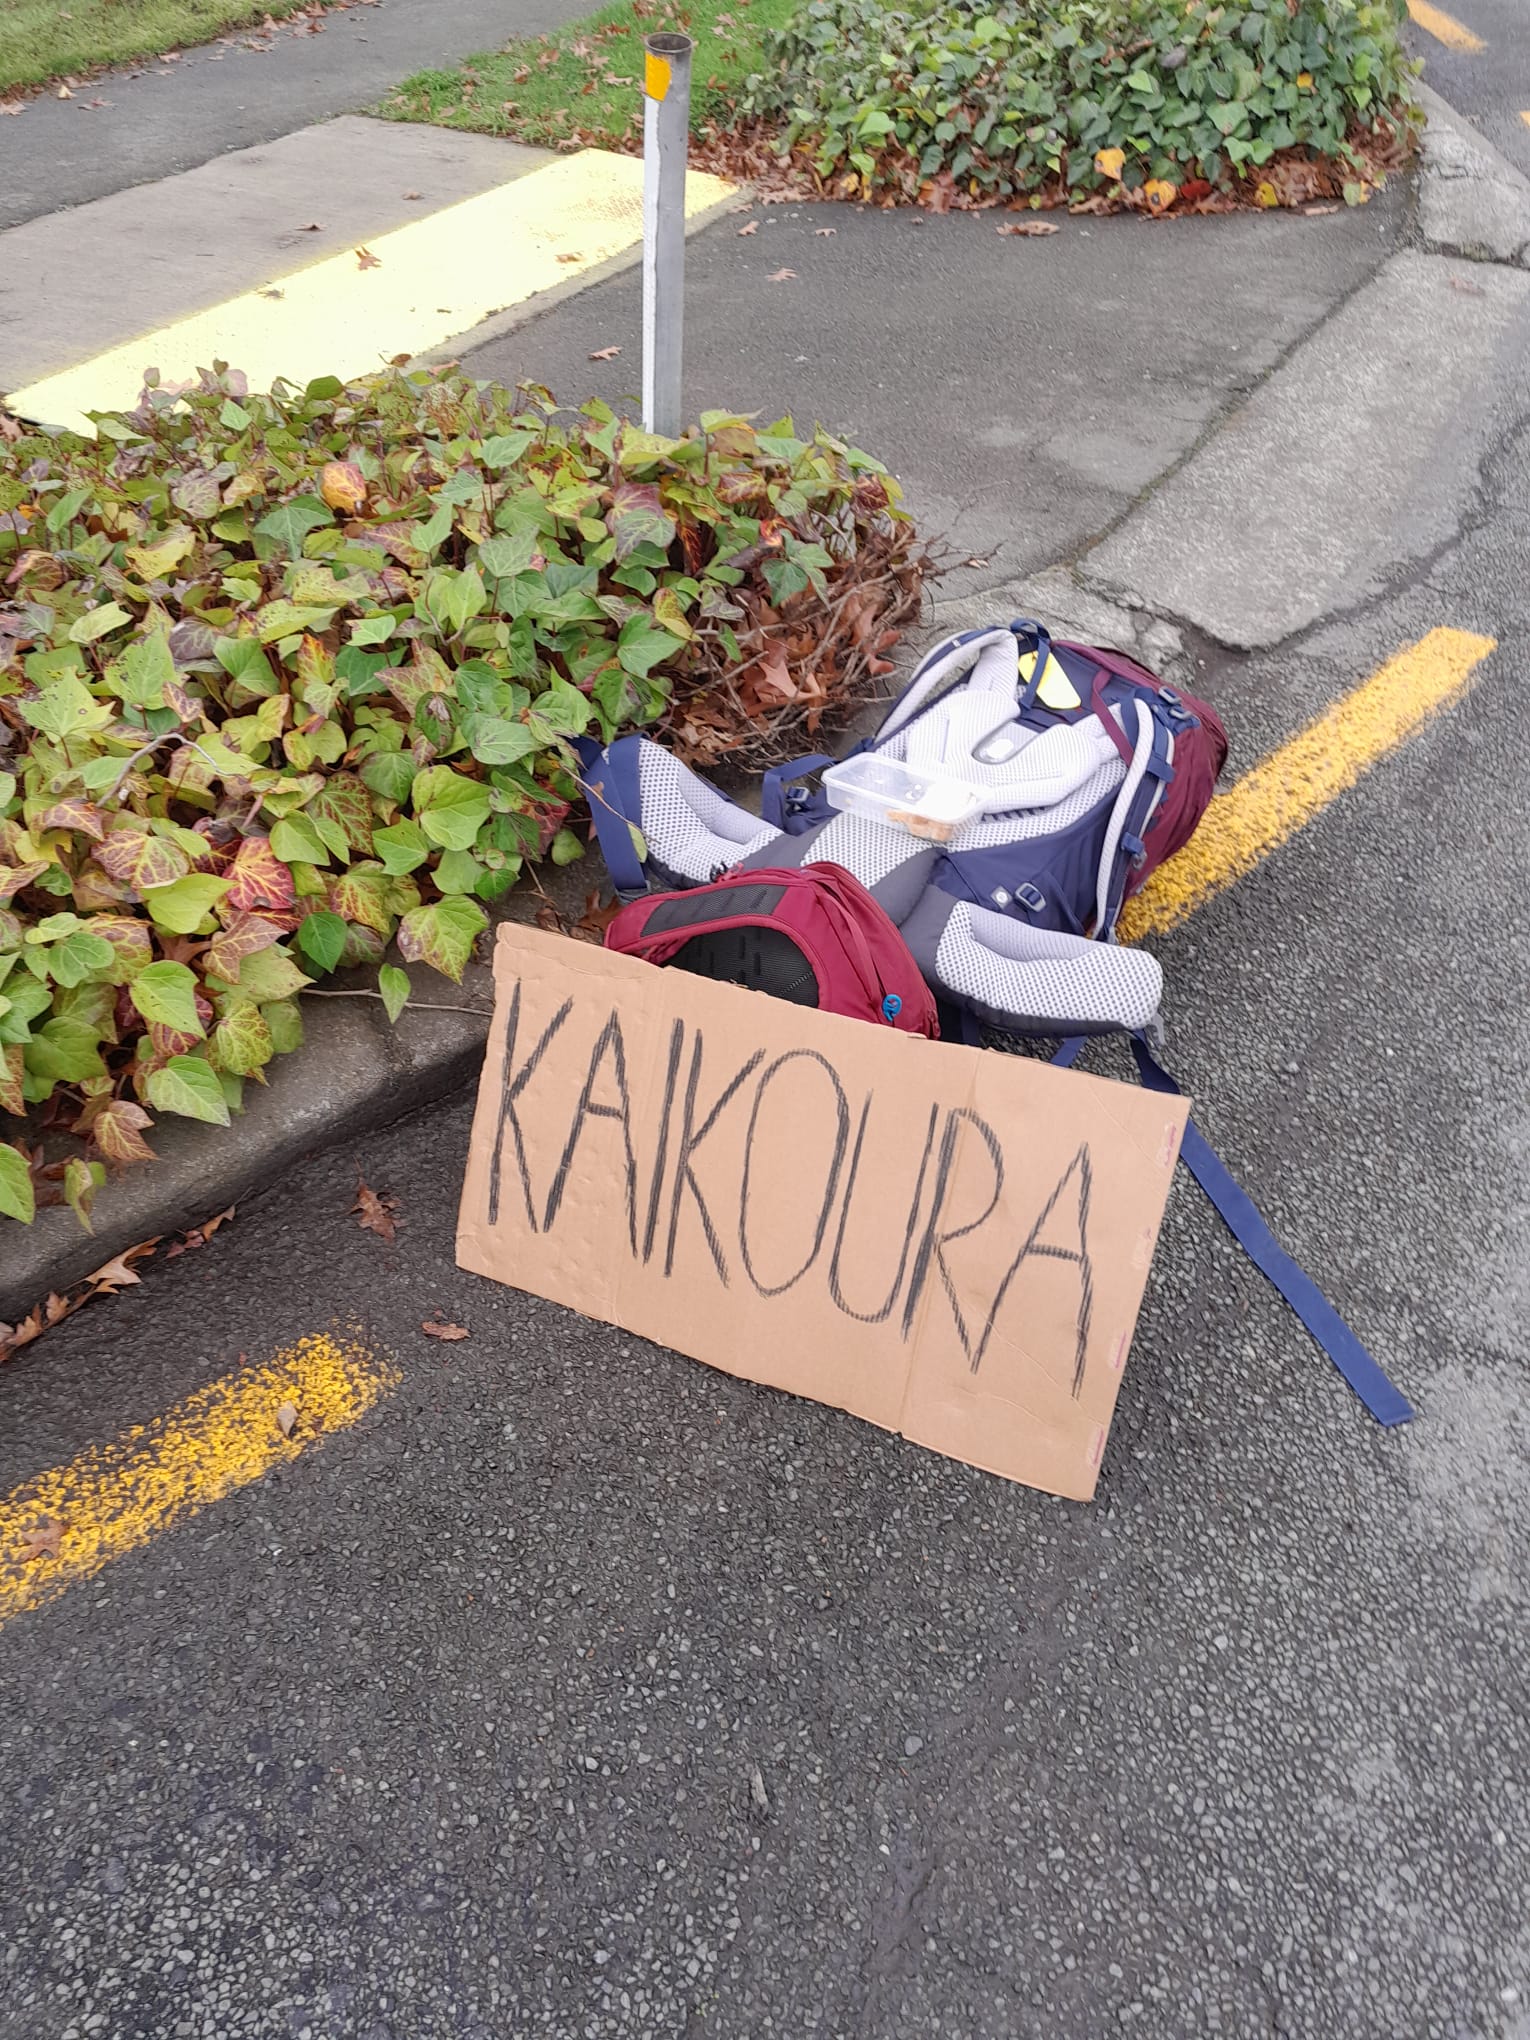 Een backpack ligt op de grond met een bord van karton met Kaikoura erop, een plaatsnaam.